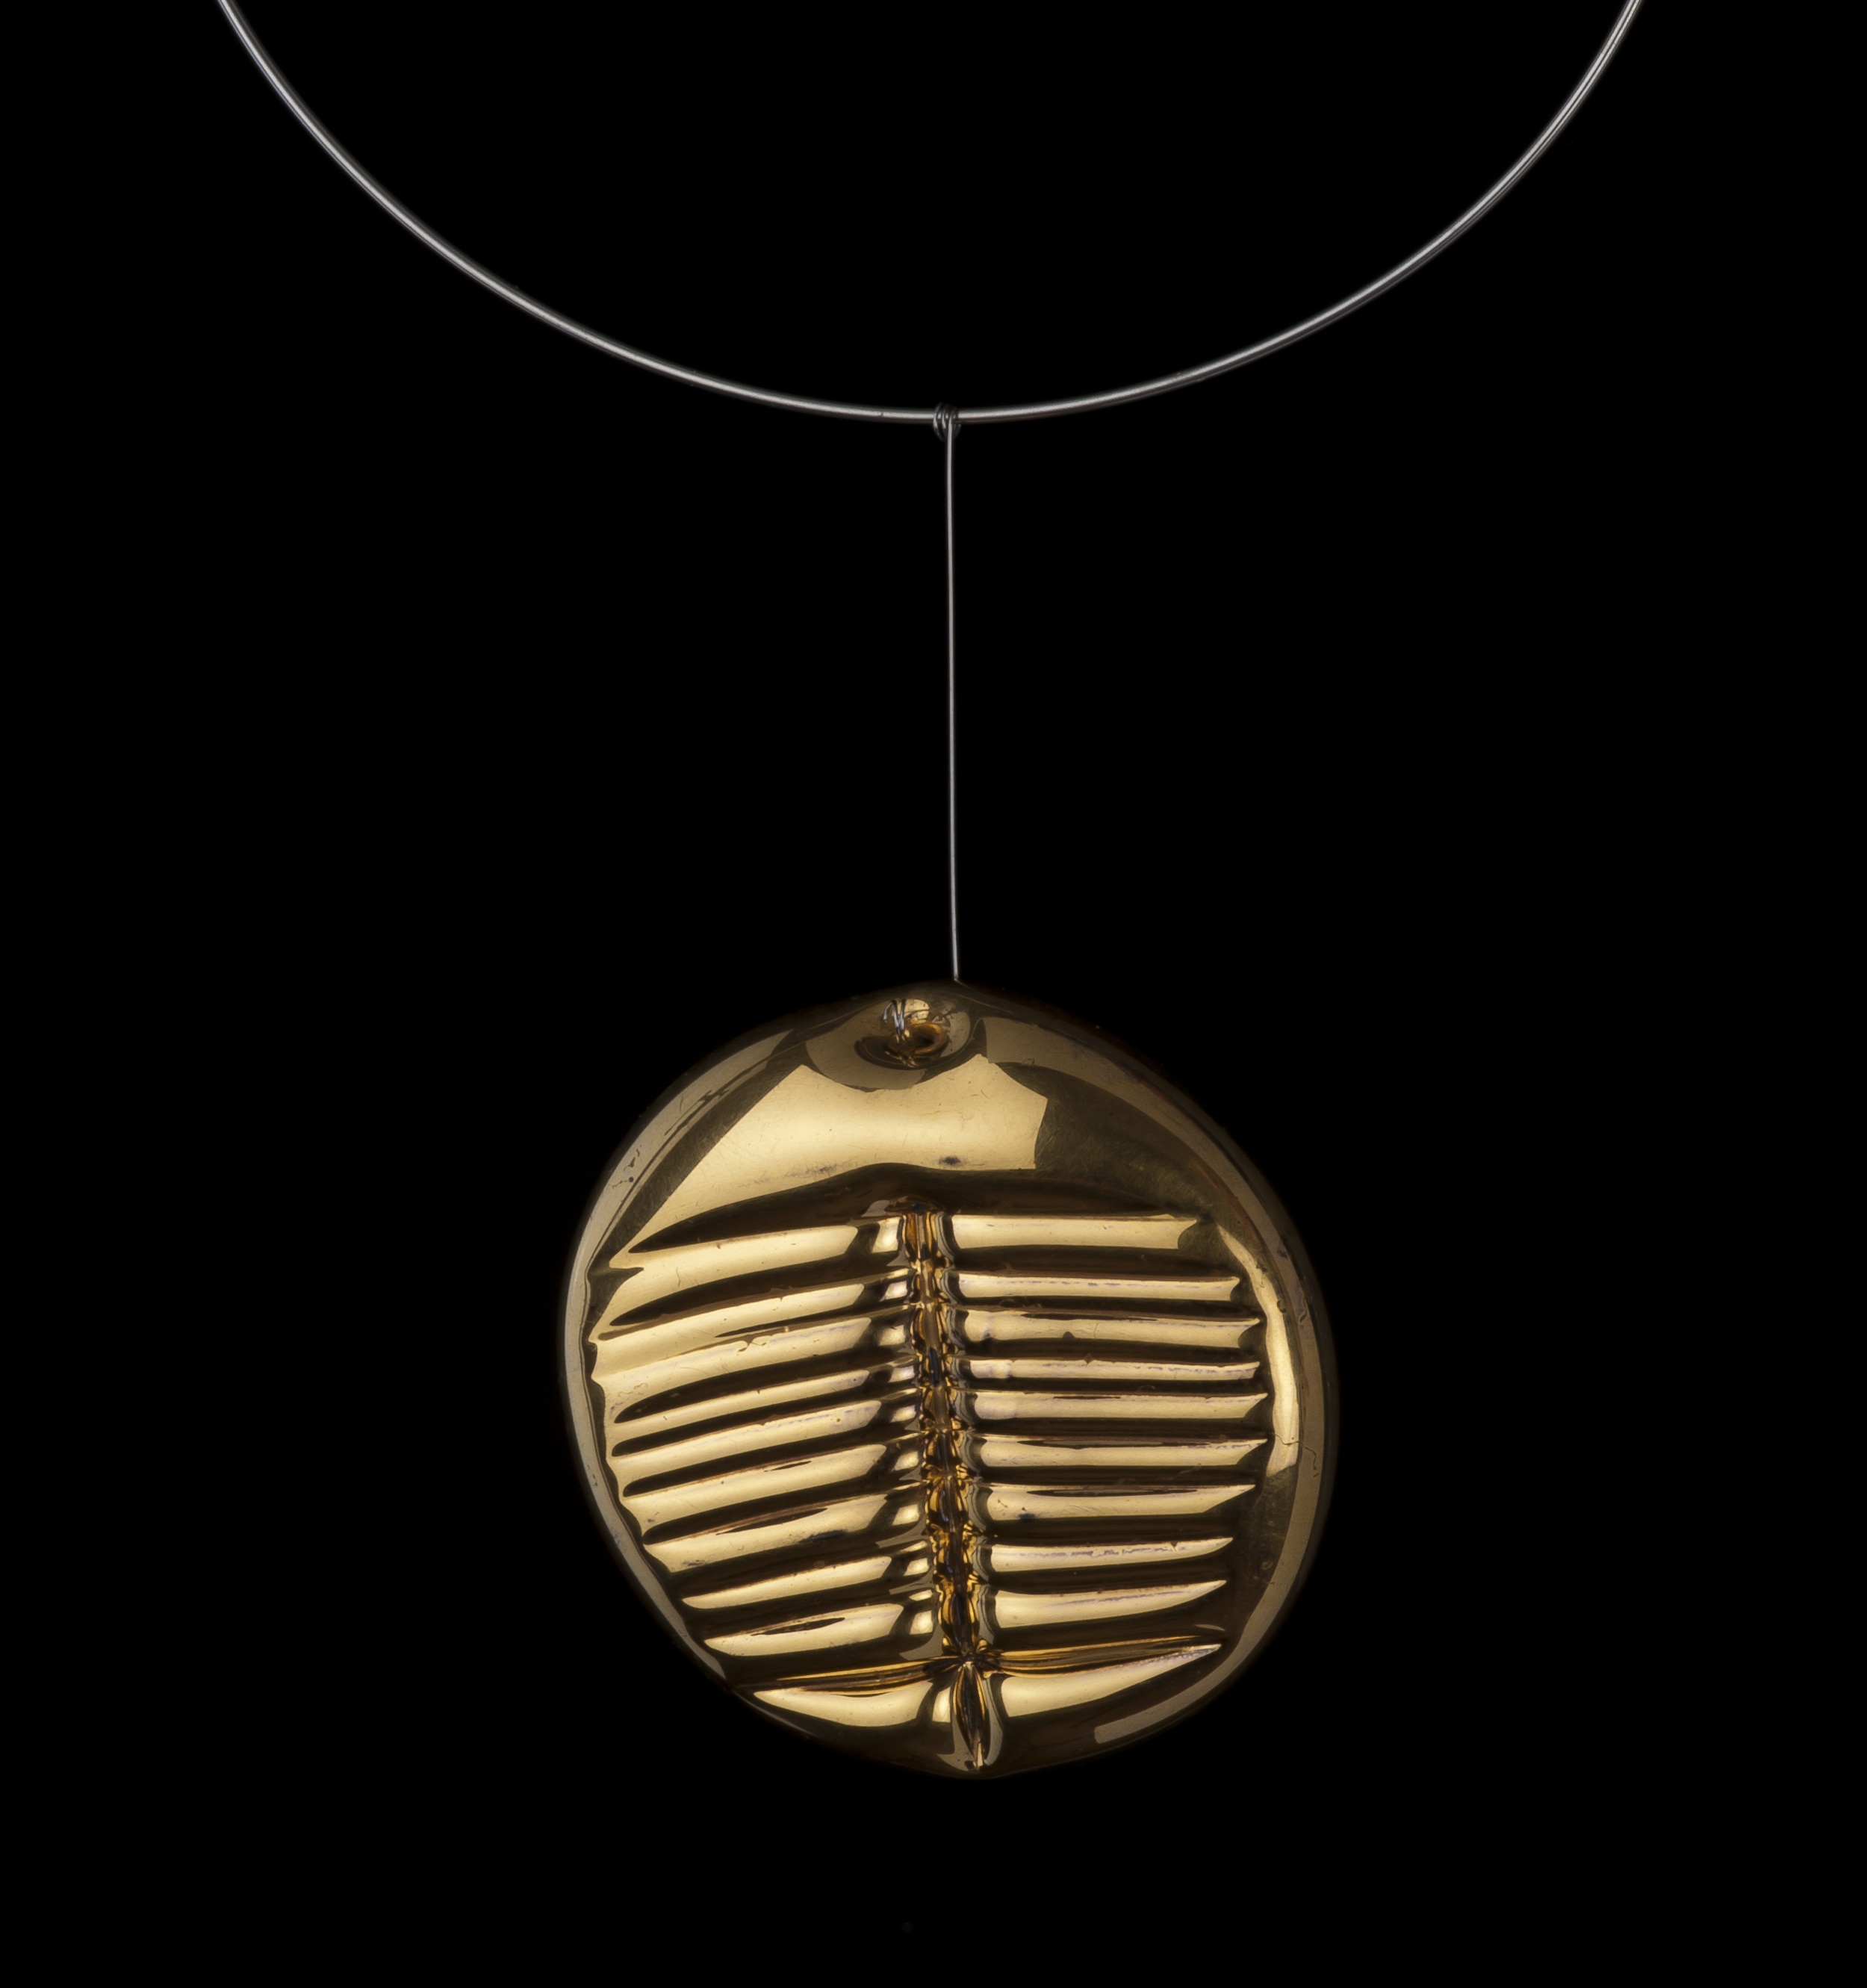 Obr-38: Lubomír Blecha, šperk „Trilobit“, hutně tvarovaný sklený šperk, čelně zlacený, inversní plocha zabroušená a zaleštěná, ?6,2 cm, 1980, vznikl z podnětu společných studii „znaků pro šlechetnou bytost“         